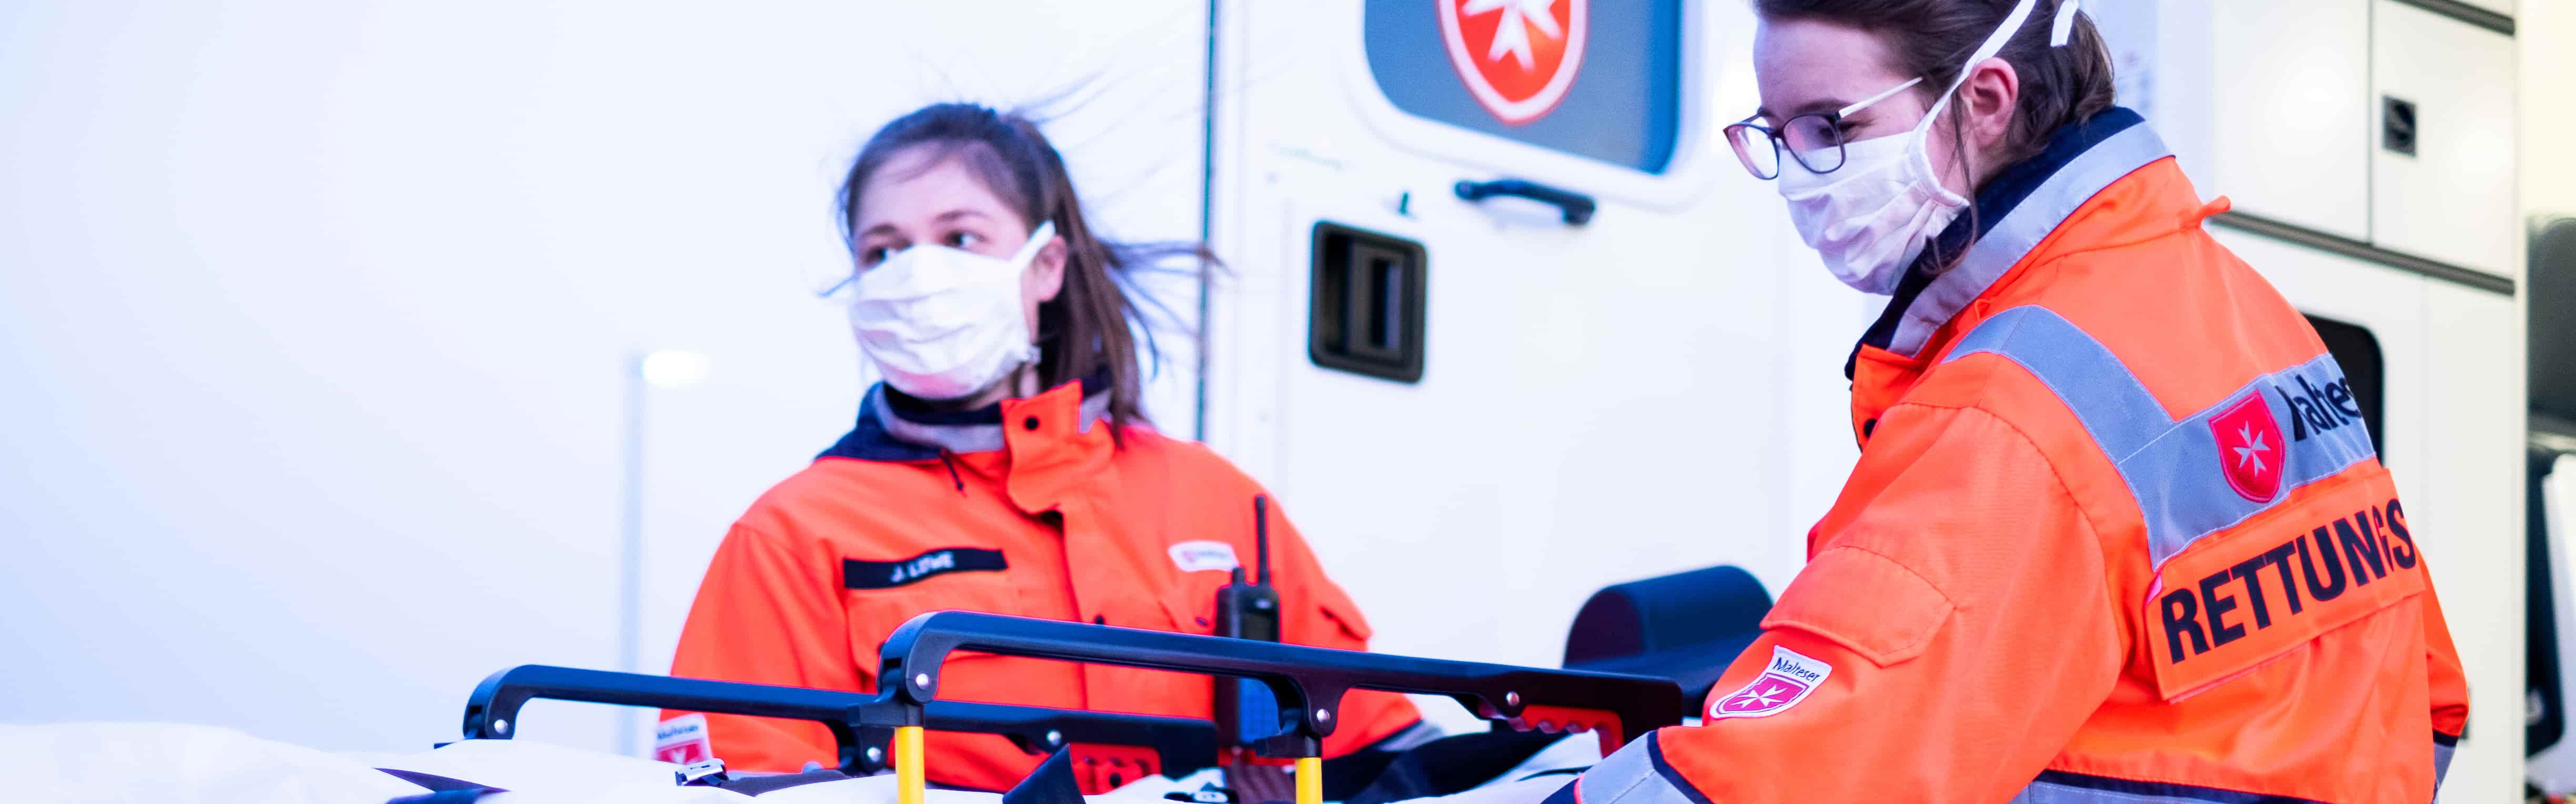 Medizinisches Personal mit Schutzausrüstung während der Corona Krise